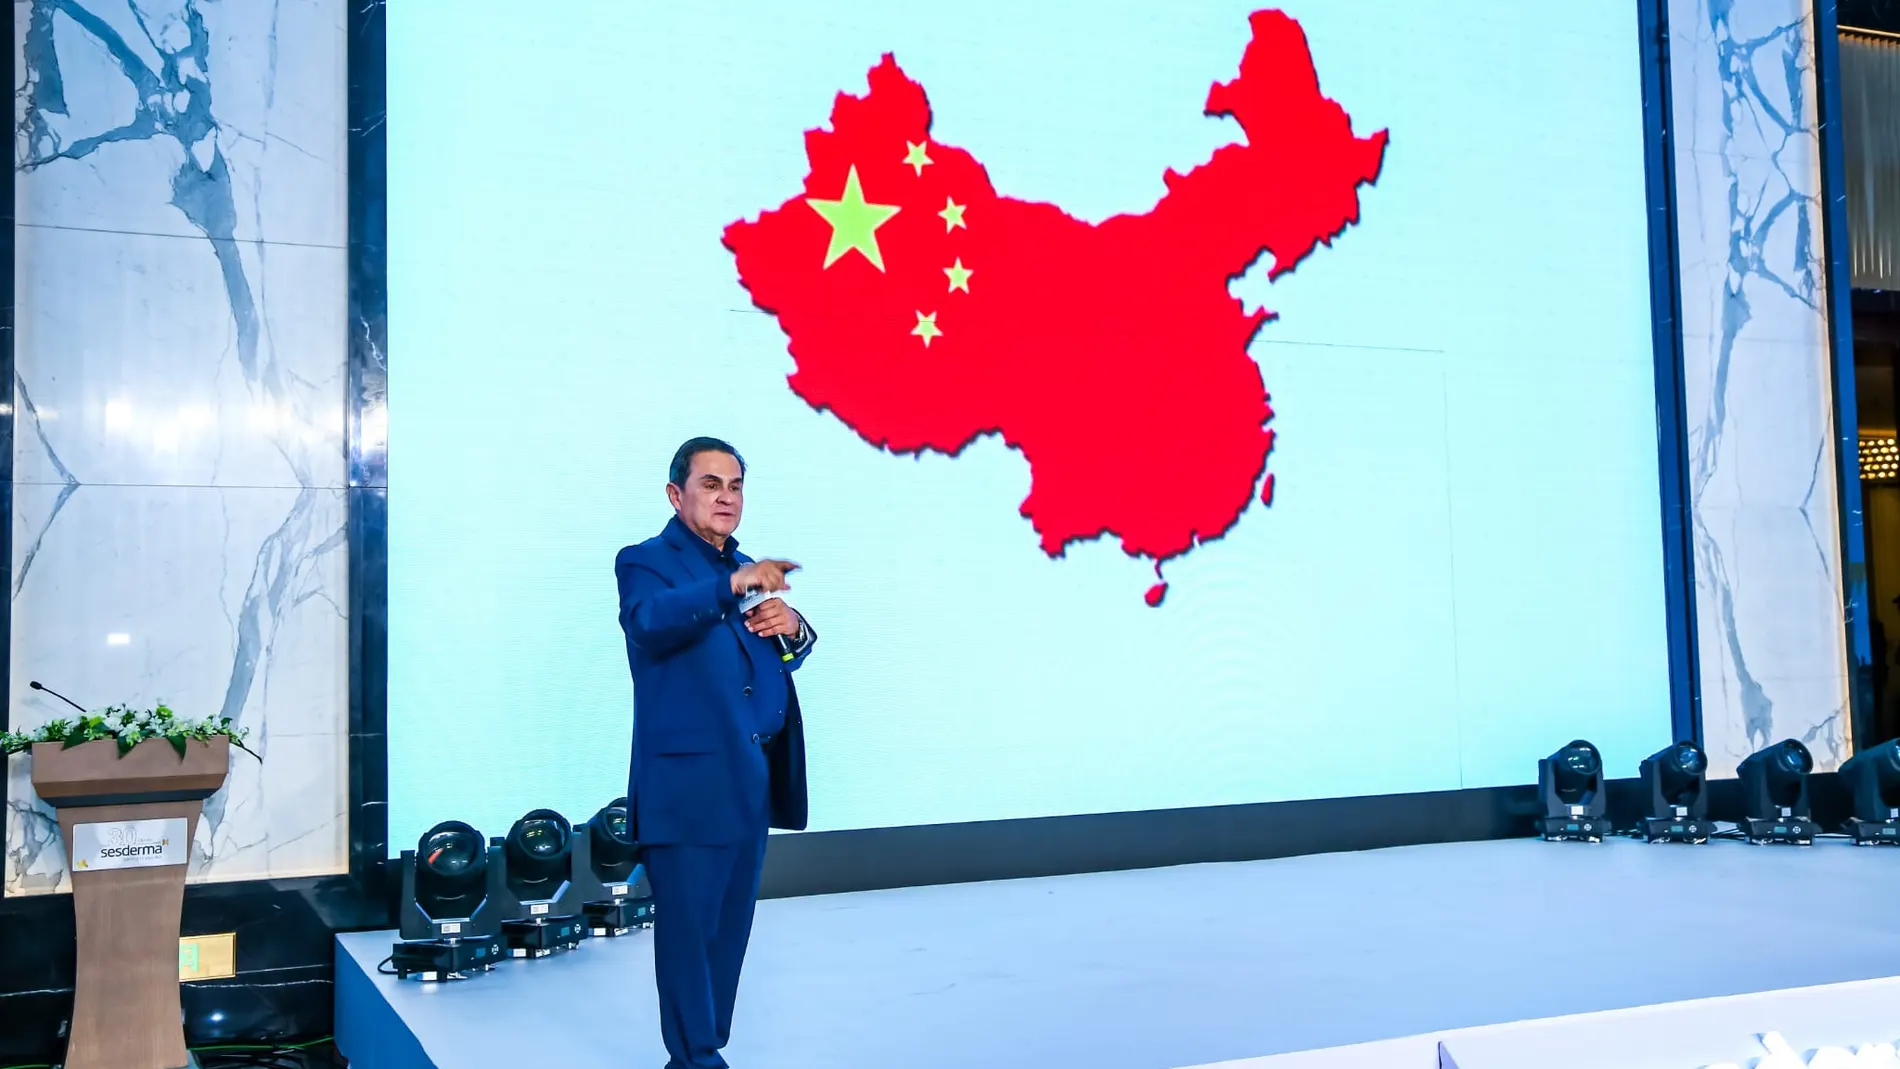 Sesderma, en el top 10 de las marcas mundiales en China